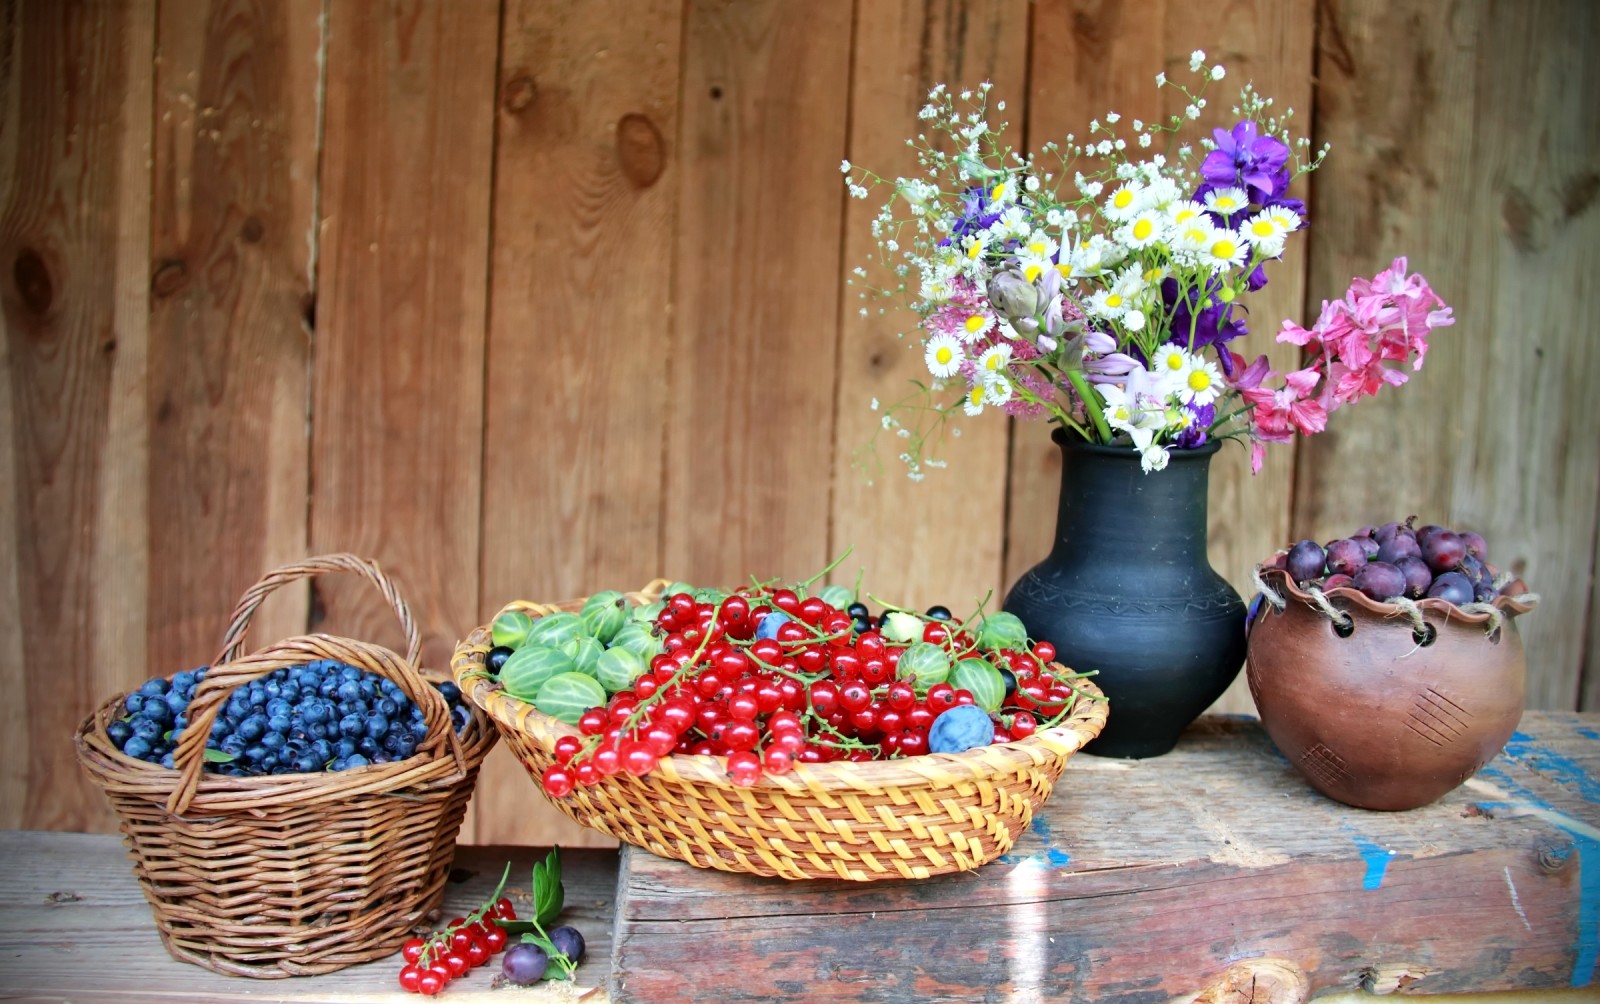 musim panas, Masih hidup, bunga-bunga, buah beri, bluberi, kismis, gooseberry